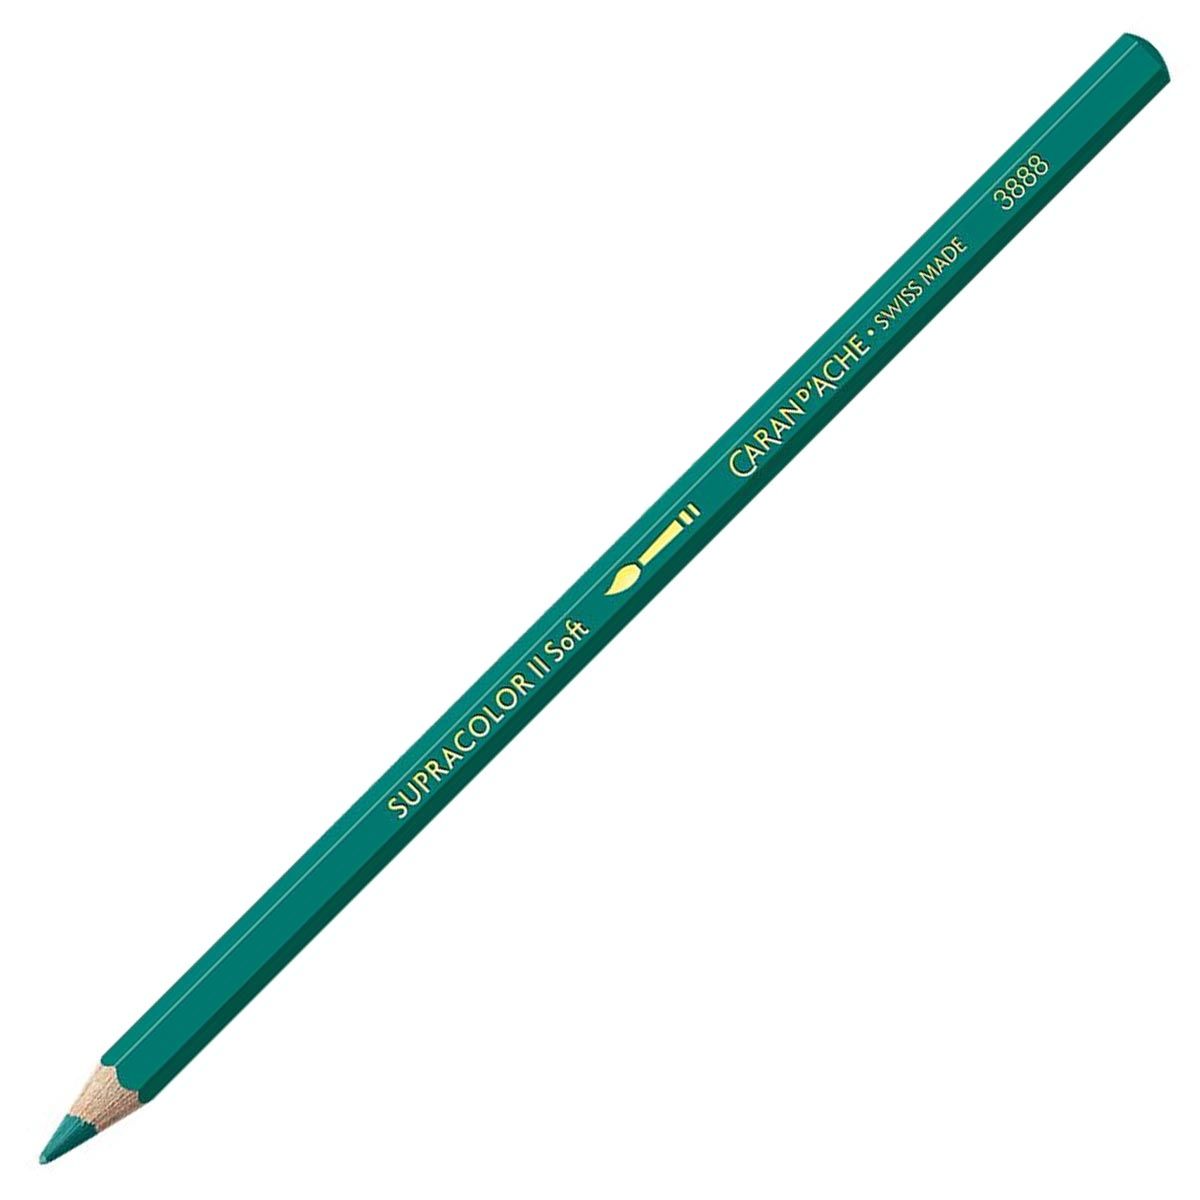 Caran d'Ache Supracolor ll Soft Aquarelle Pencil - Greenish Blue 190